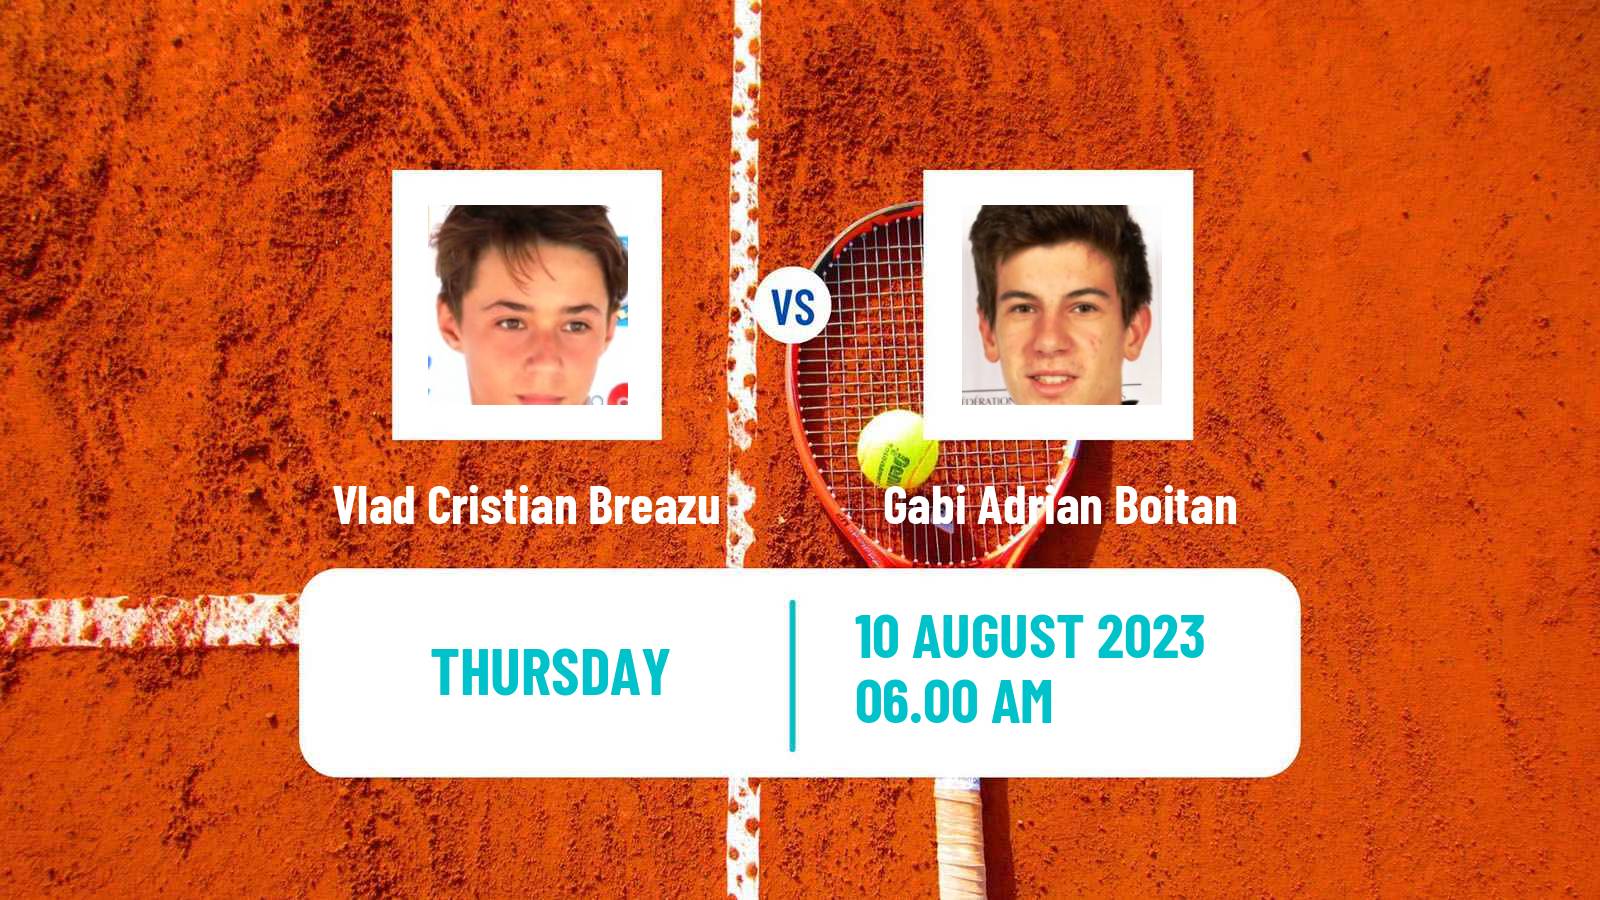 Tennis ITF M15 Curtea De Arges Men Vlad Cristian Breazu - Gabi Adrian Boitan